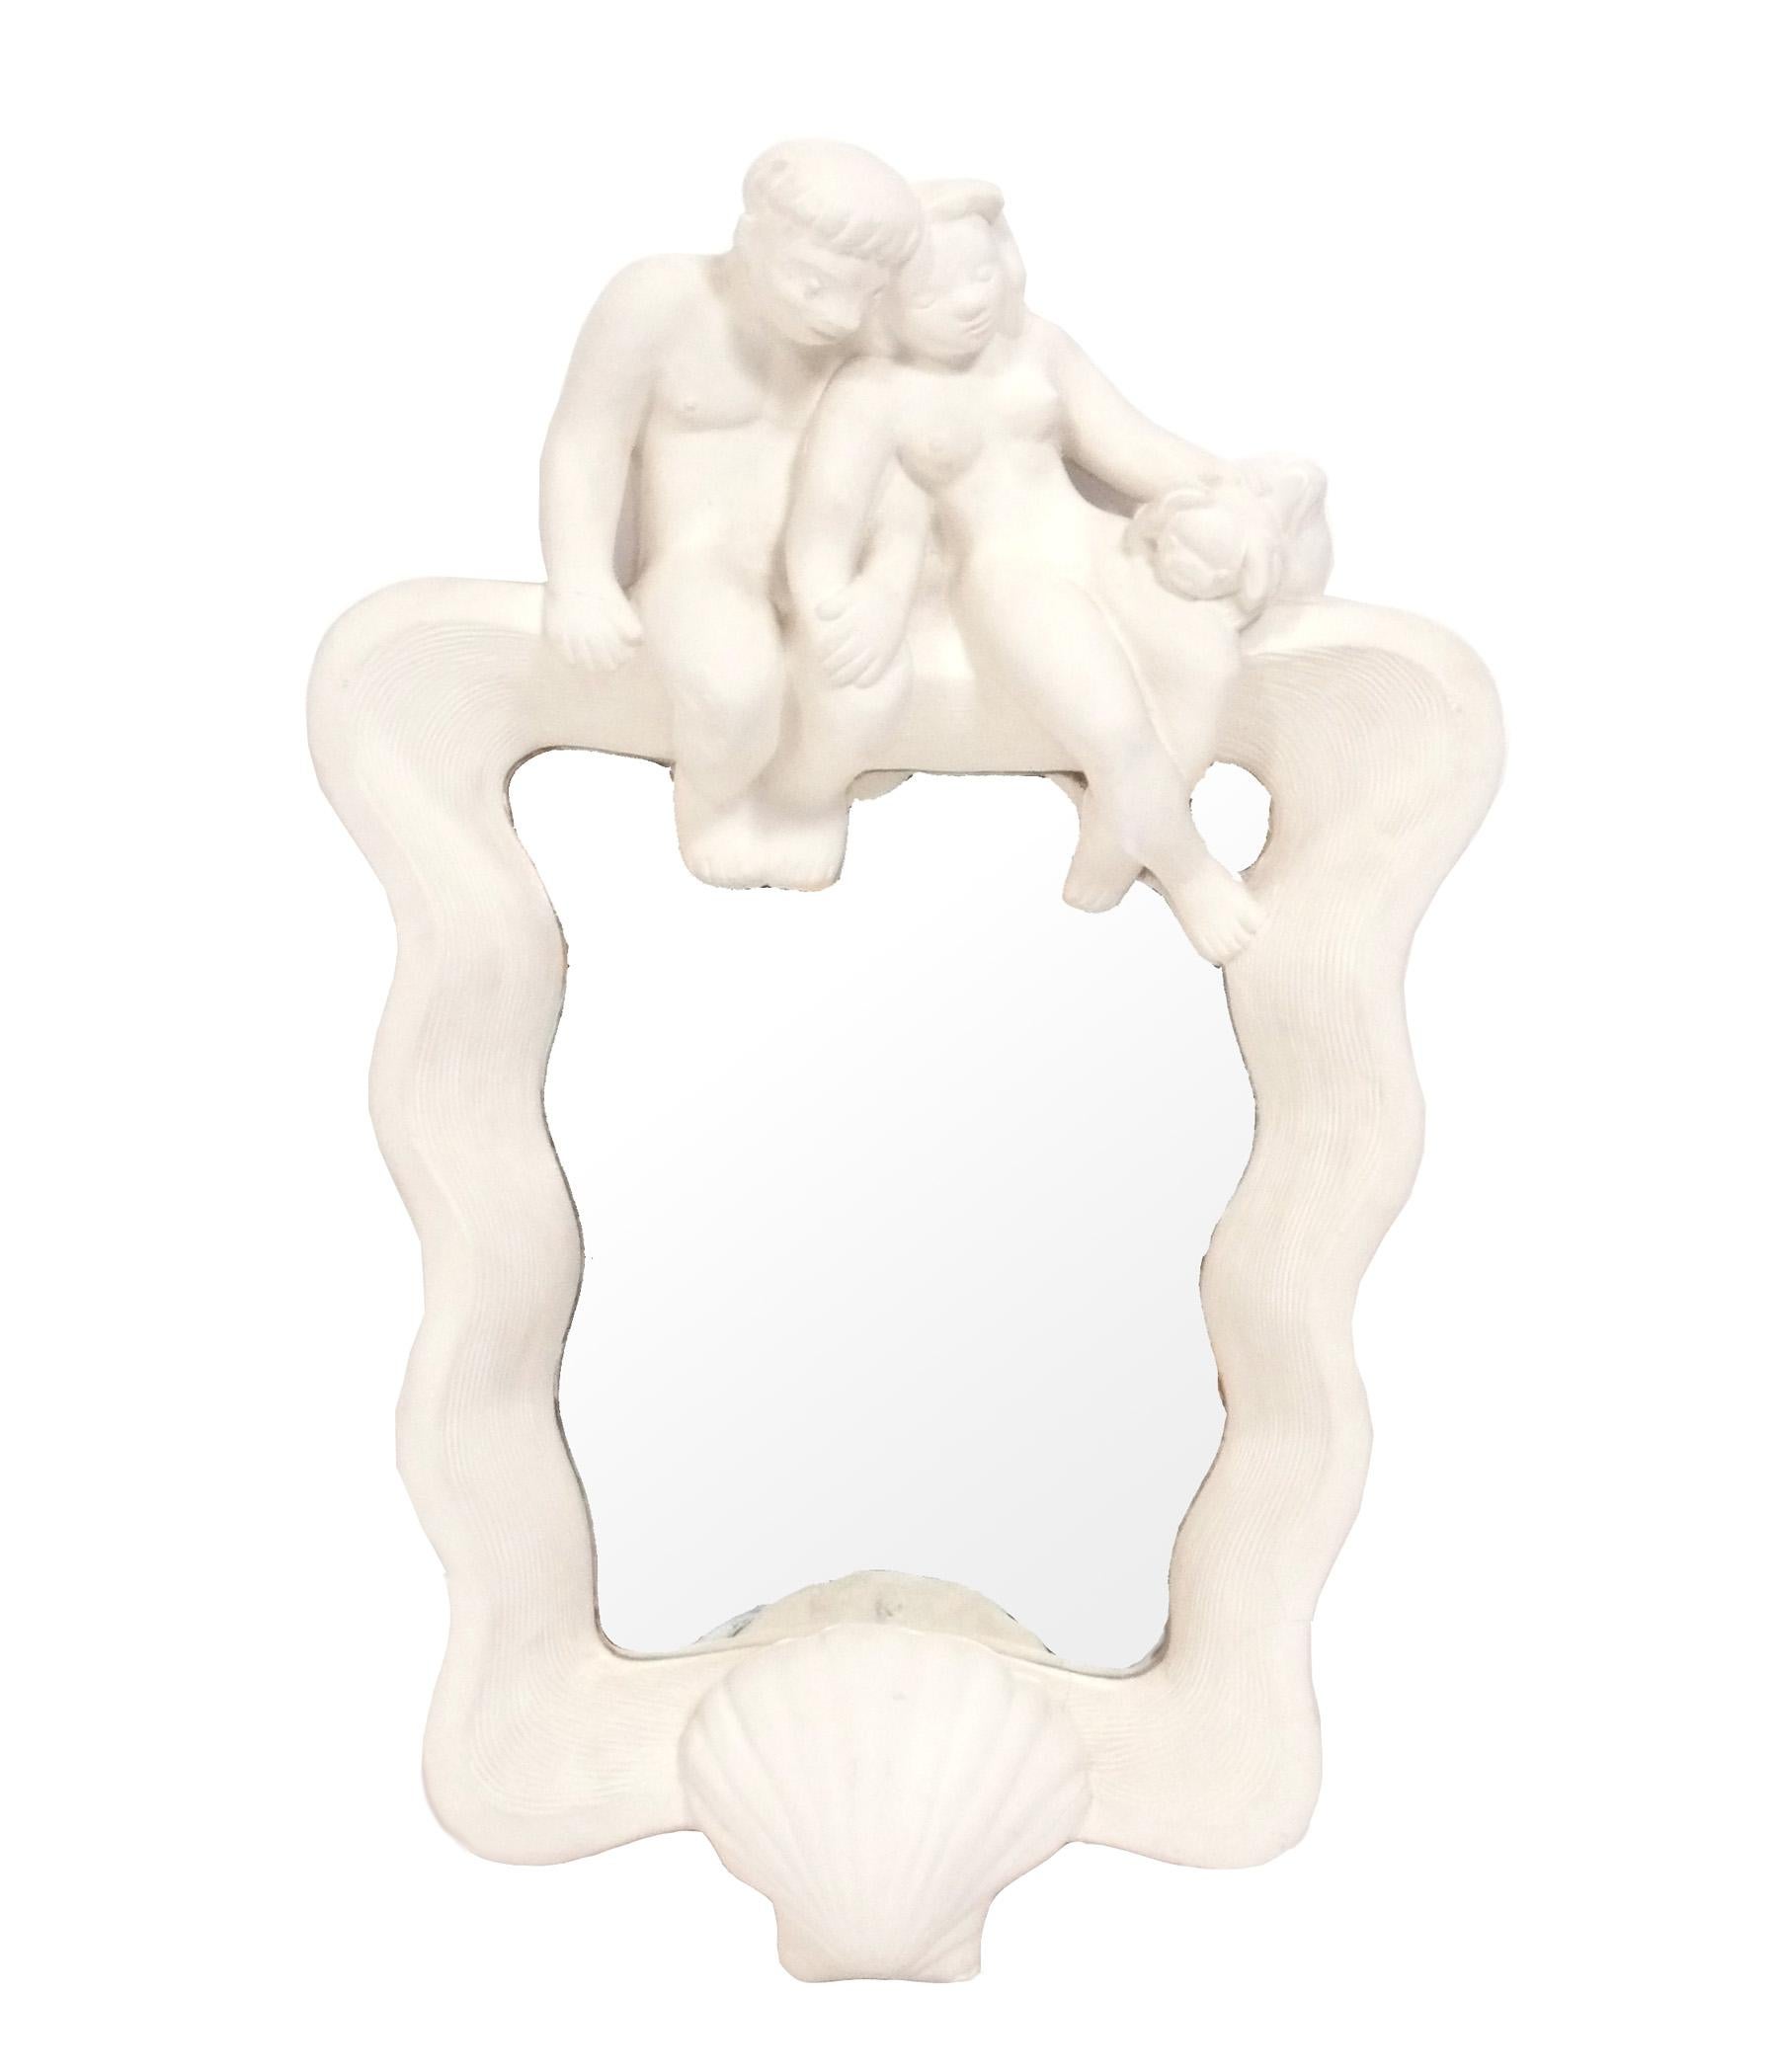 Eleganter weißer Gipsspiegel und wandmontierter Konsolentisch oder -regal, entworfen von Cecilia Graham, Amerikanerin, ca. 1930er Jahre. Behält die warme Originalpatina. Cecilia Graham war eine von vier Künstlerinnen, die mit der Gestaltung von